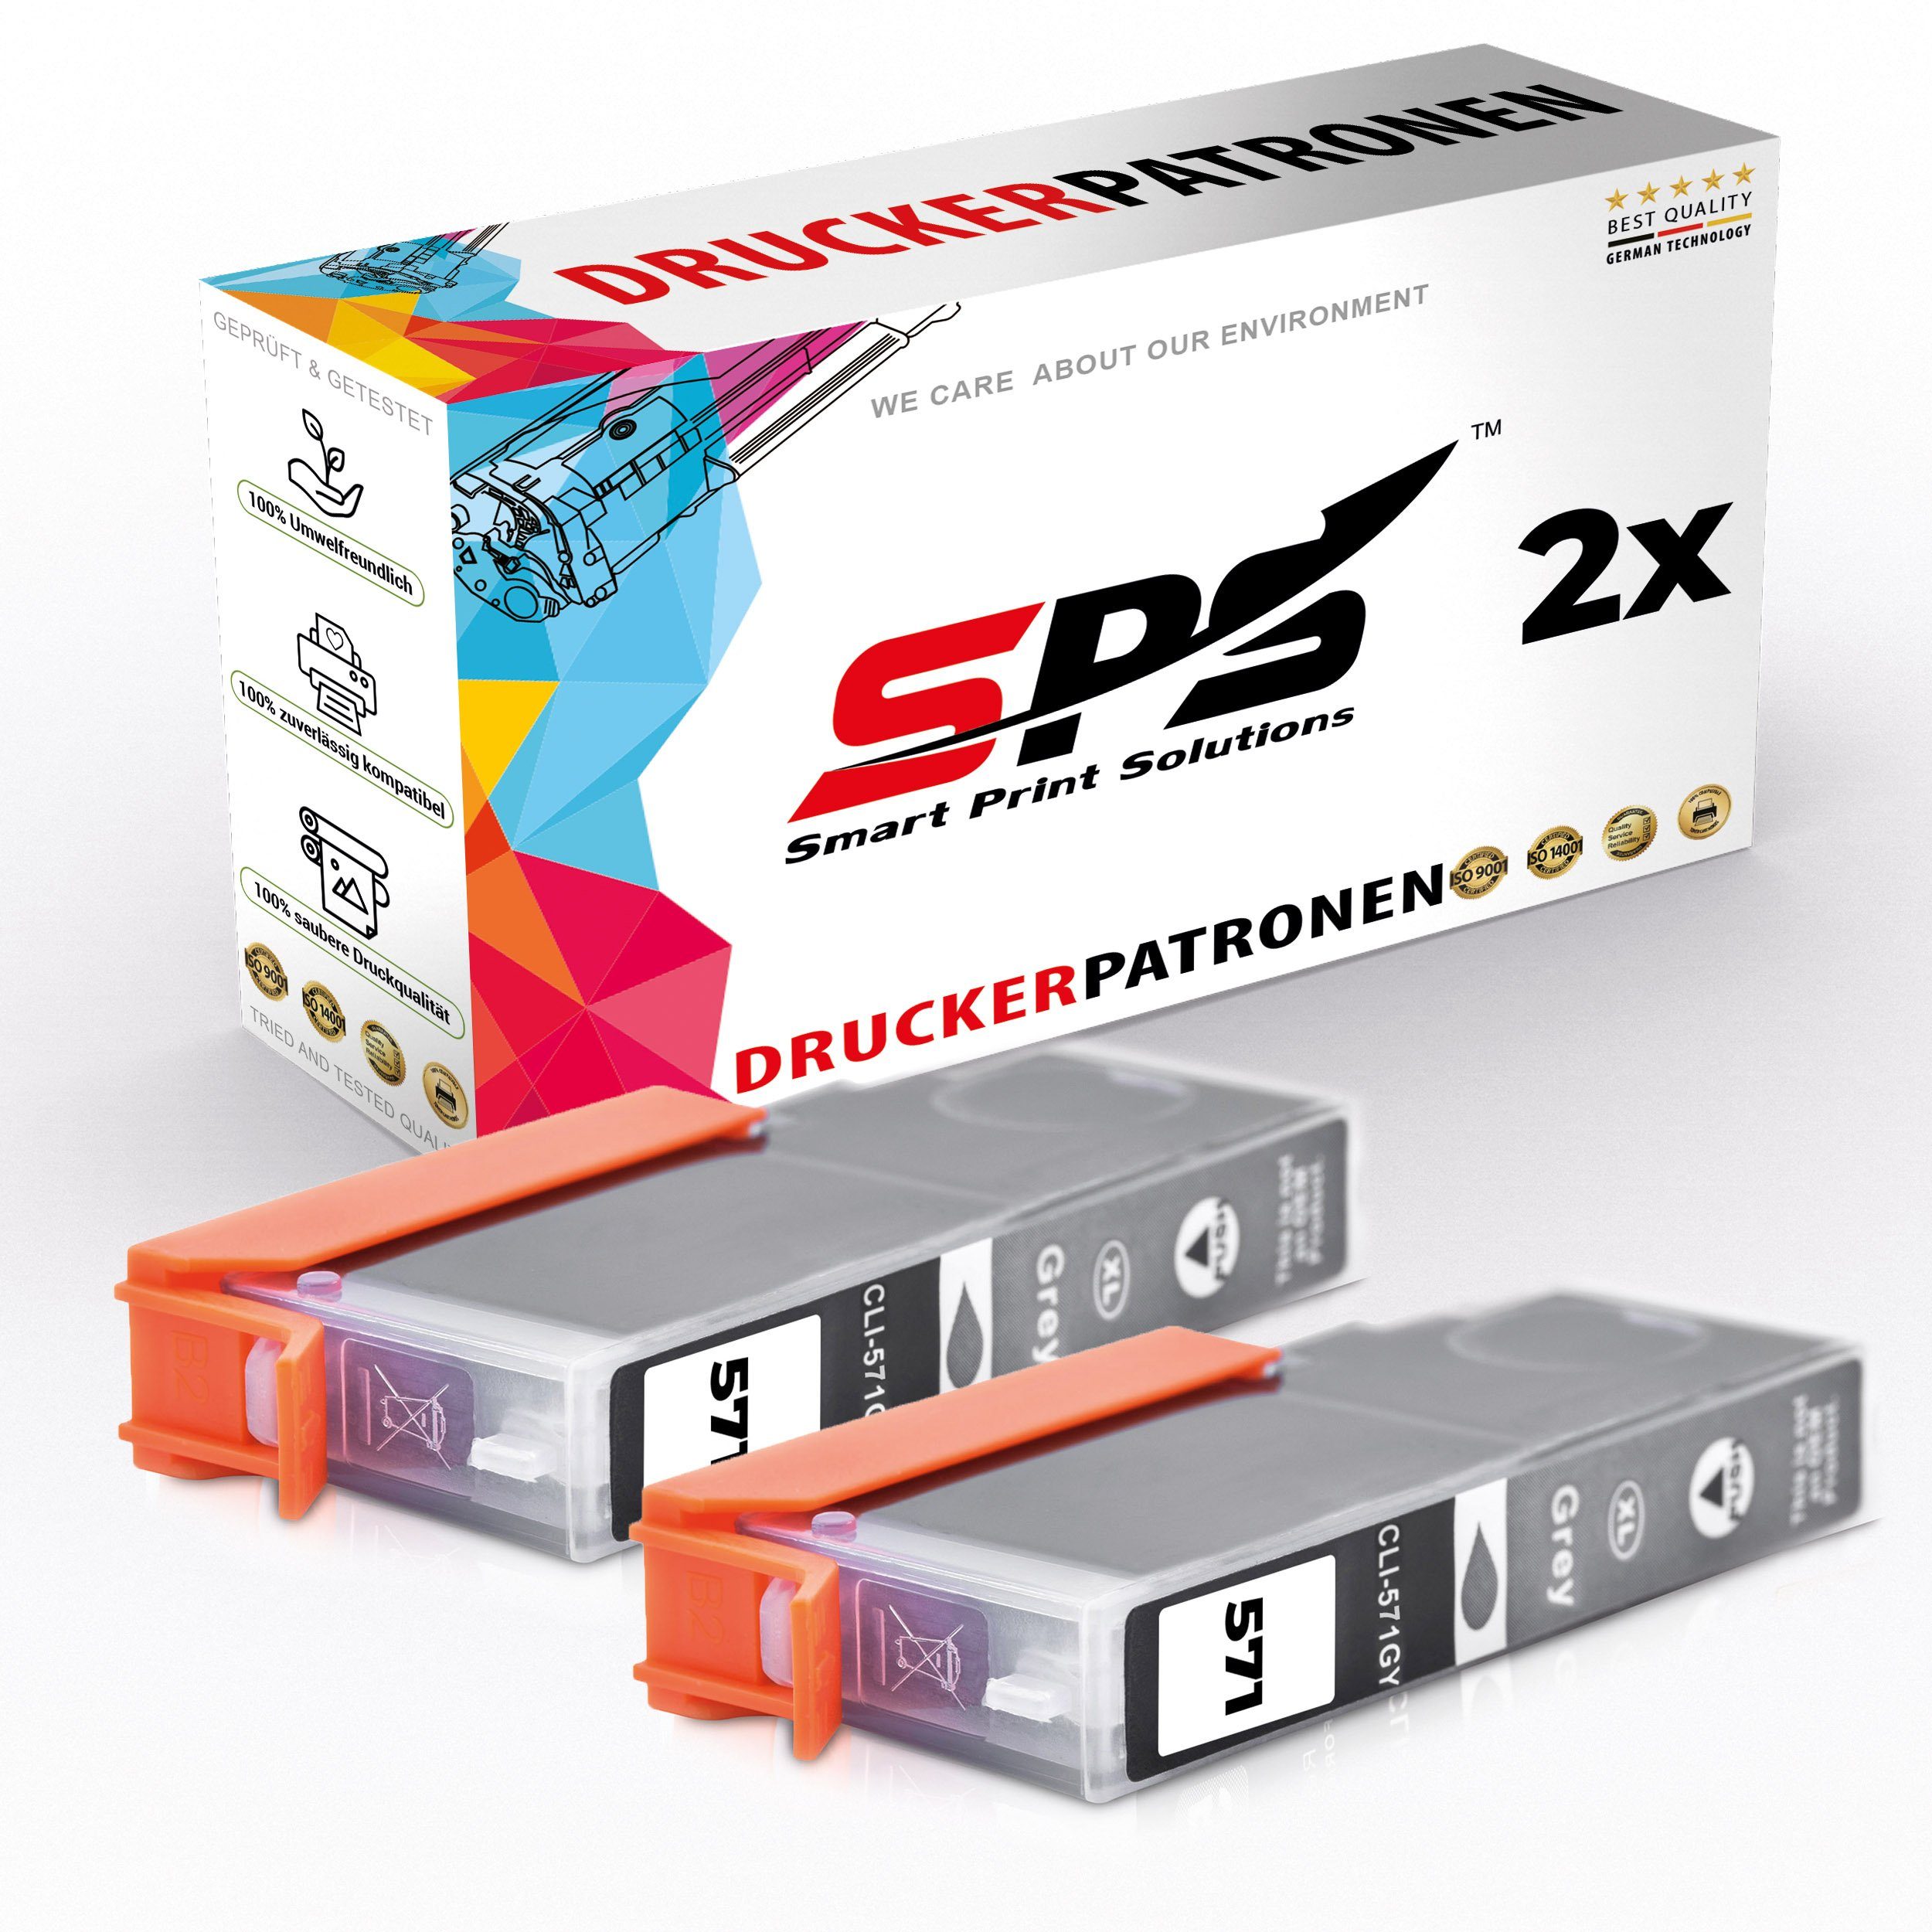 Canon für Nachfülltinte SPS Pixma x) Kompatibel Pack, 2er TS9055 CLI-571 Canon, 0335C001 (für